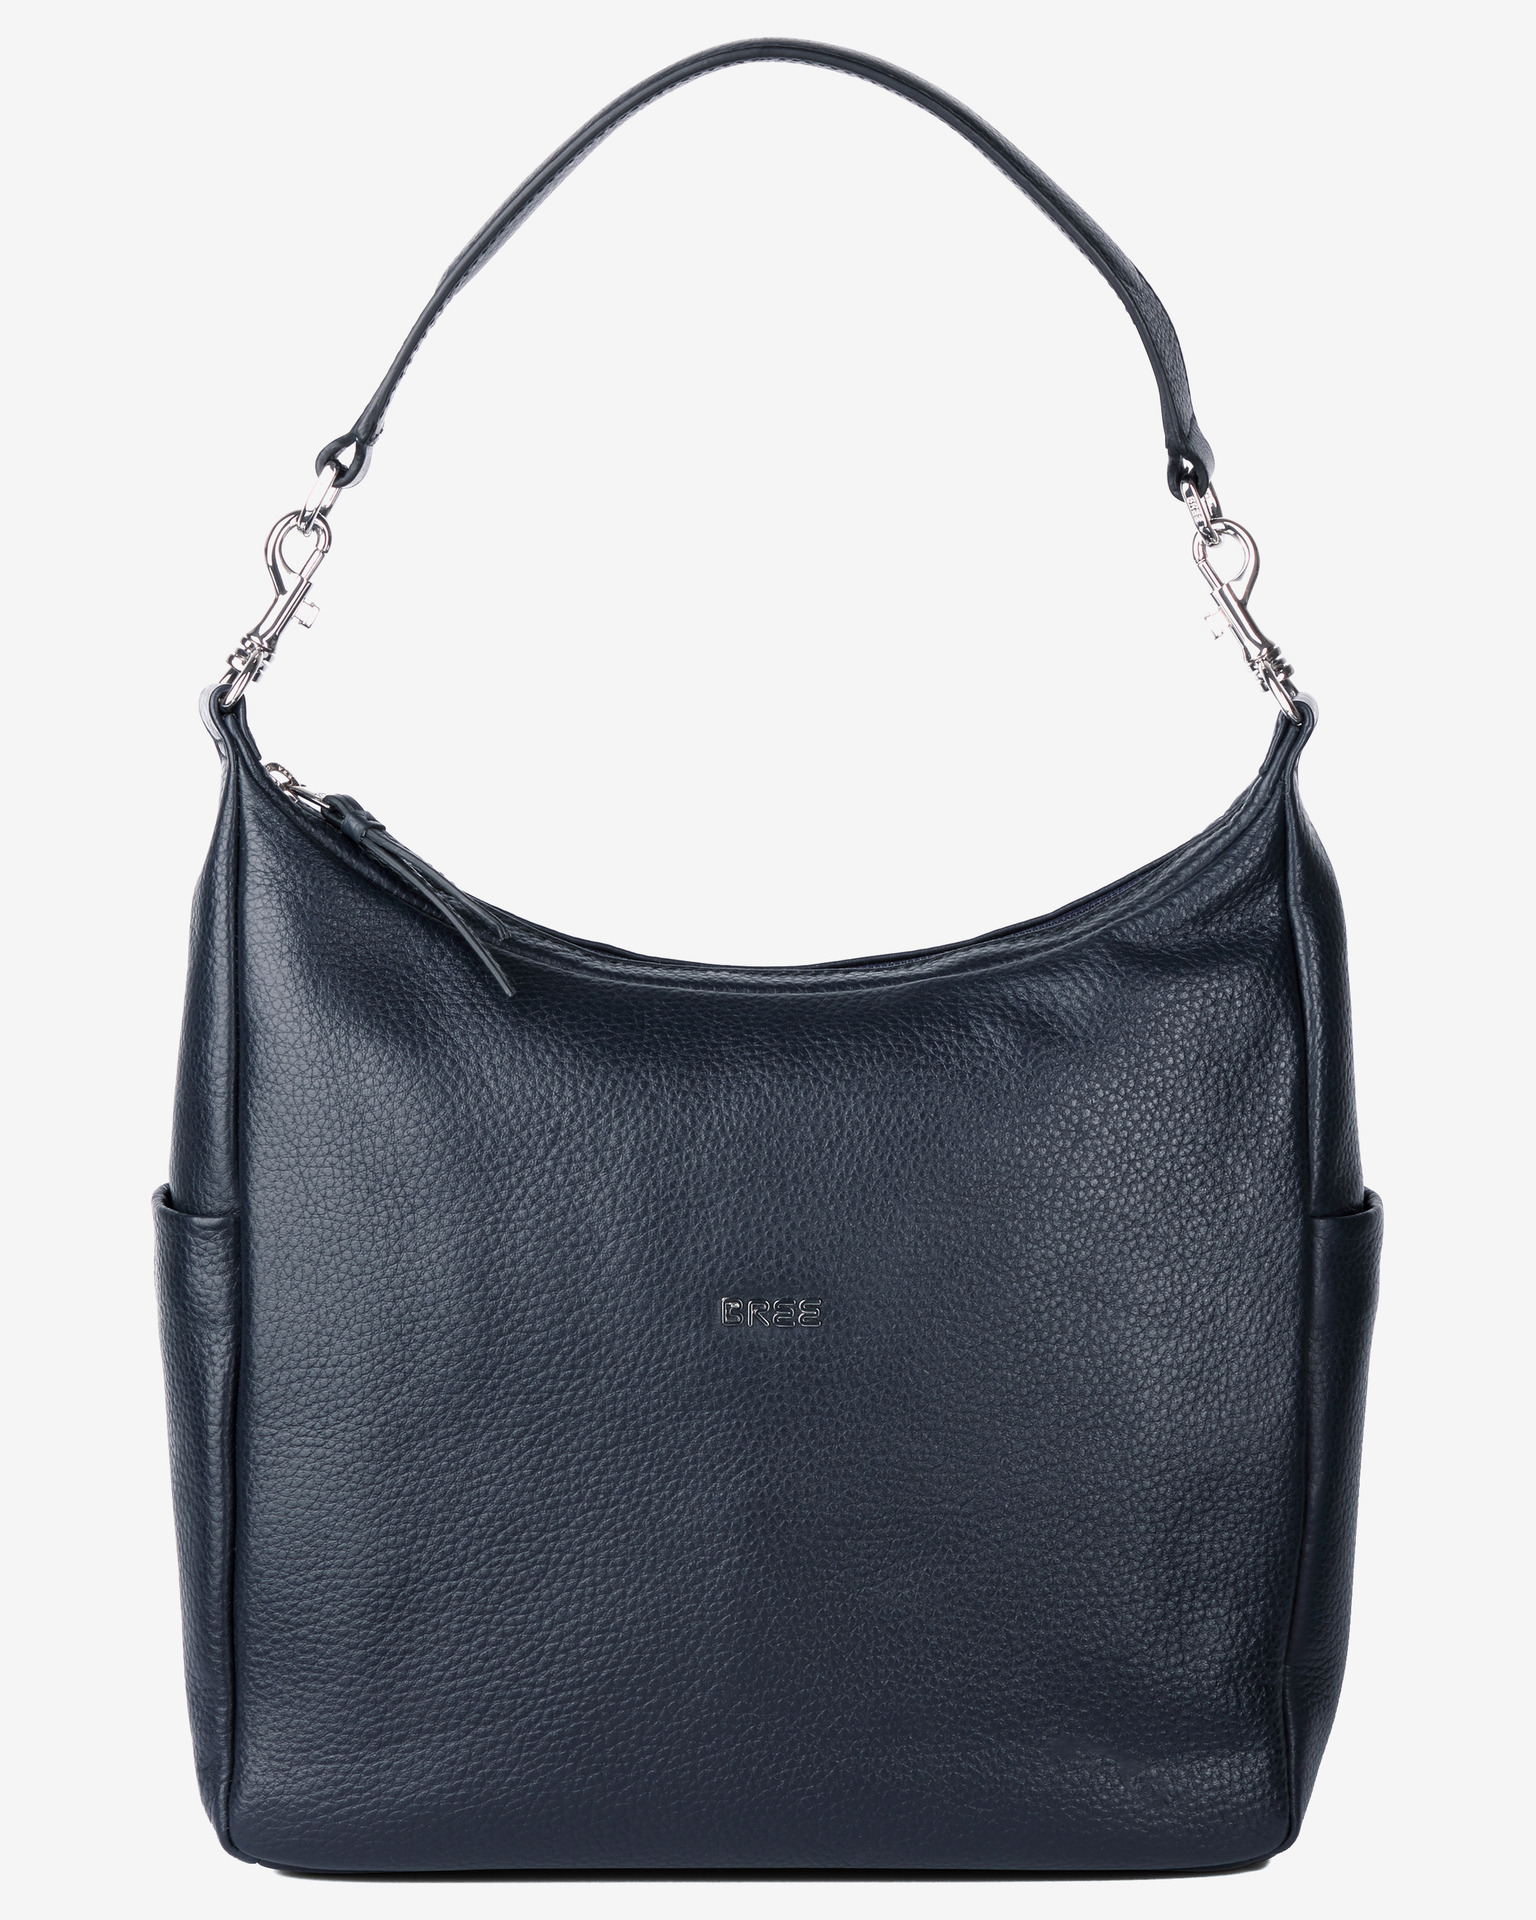 BREE Womenâ€™S 184030 Cross-Body Bag : Amazon.in: Shoes & Handbags